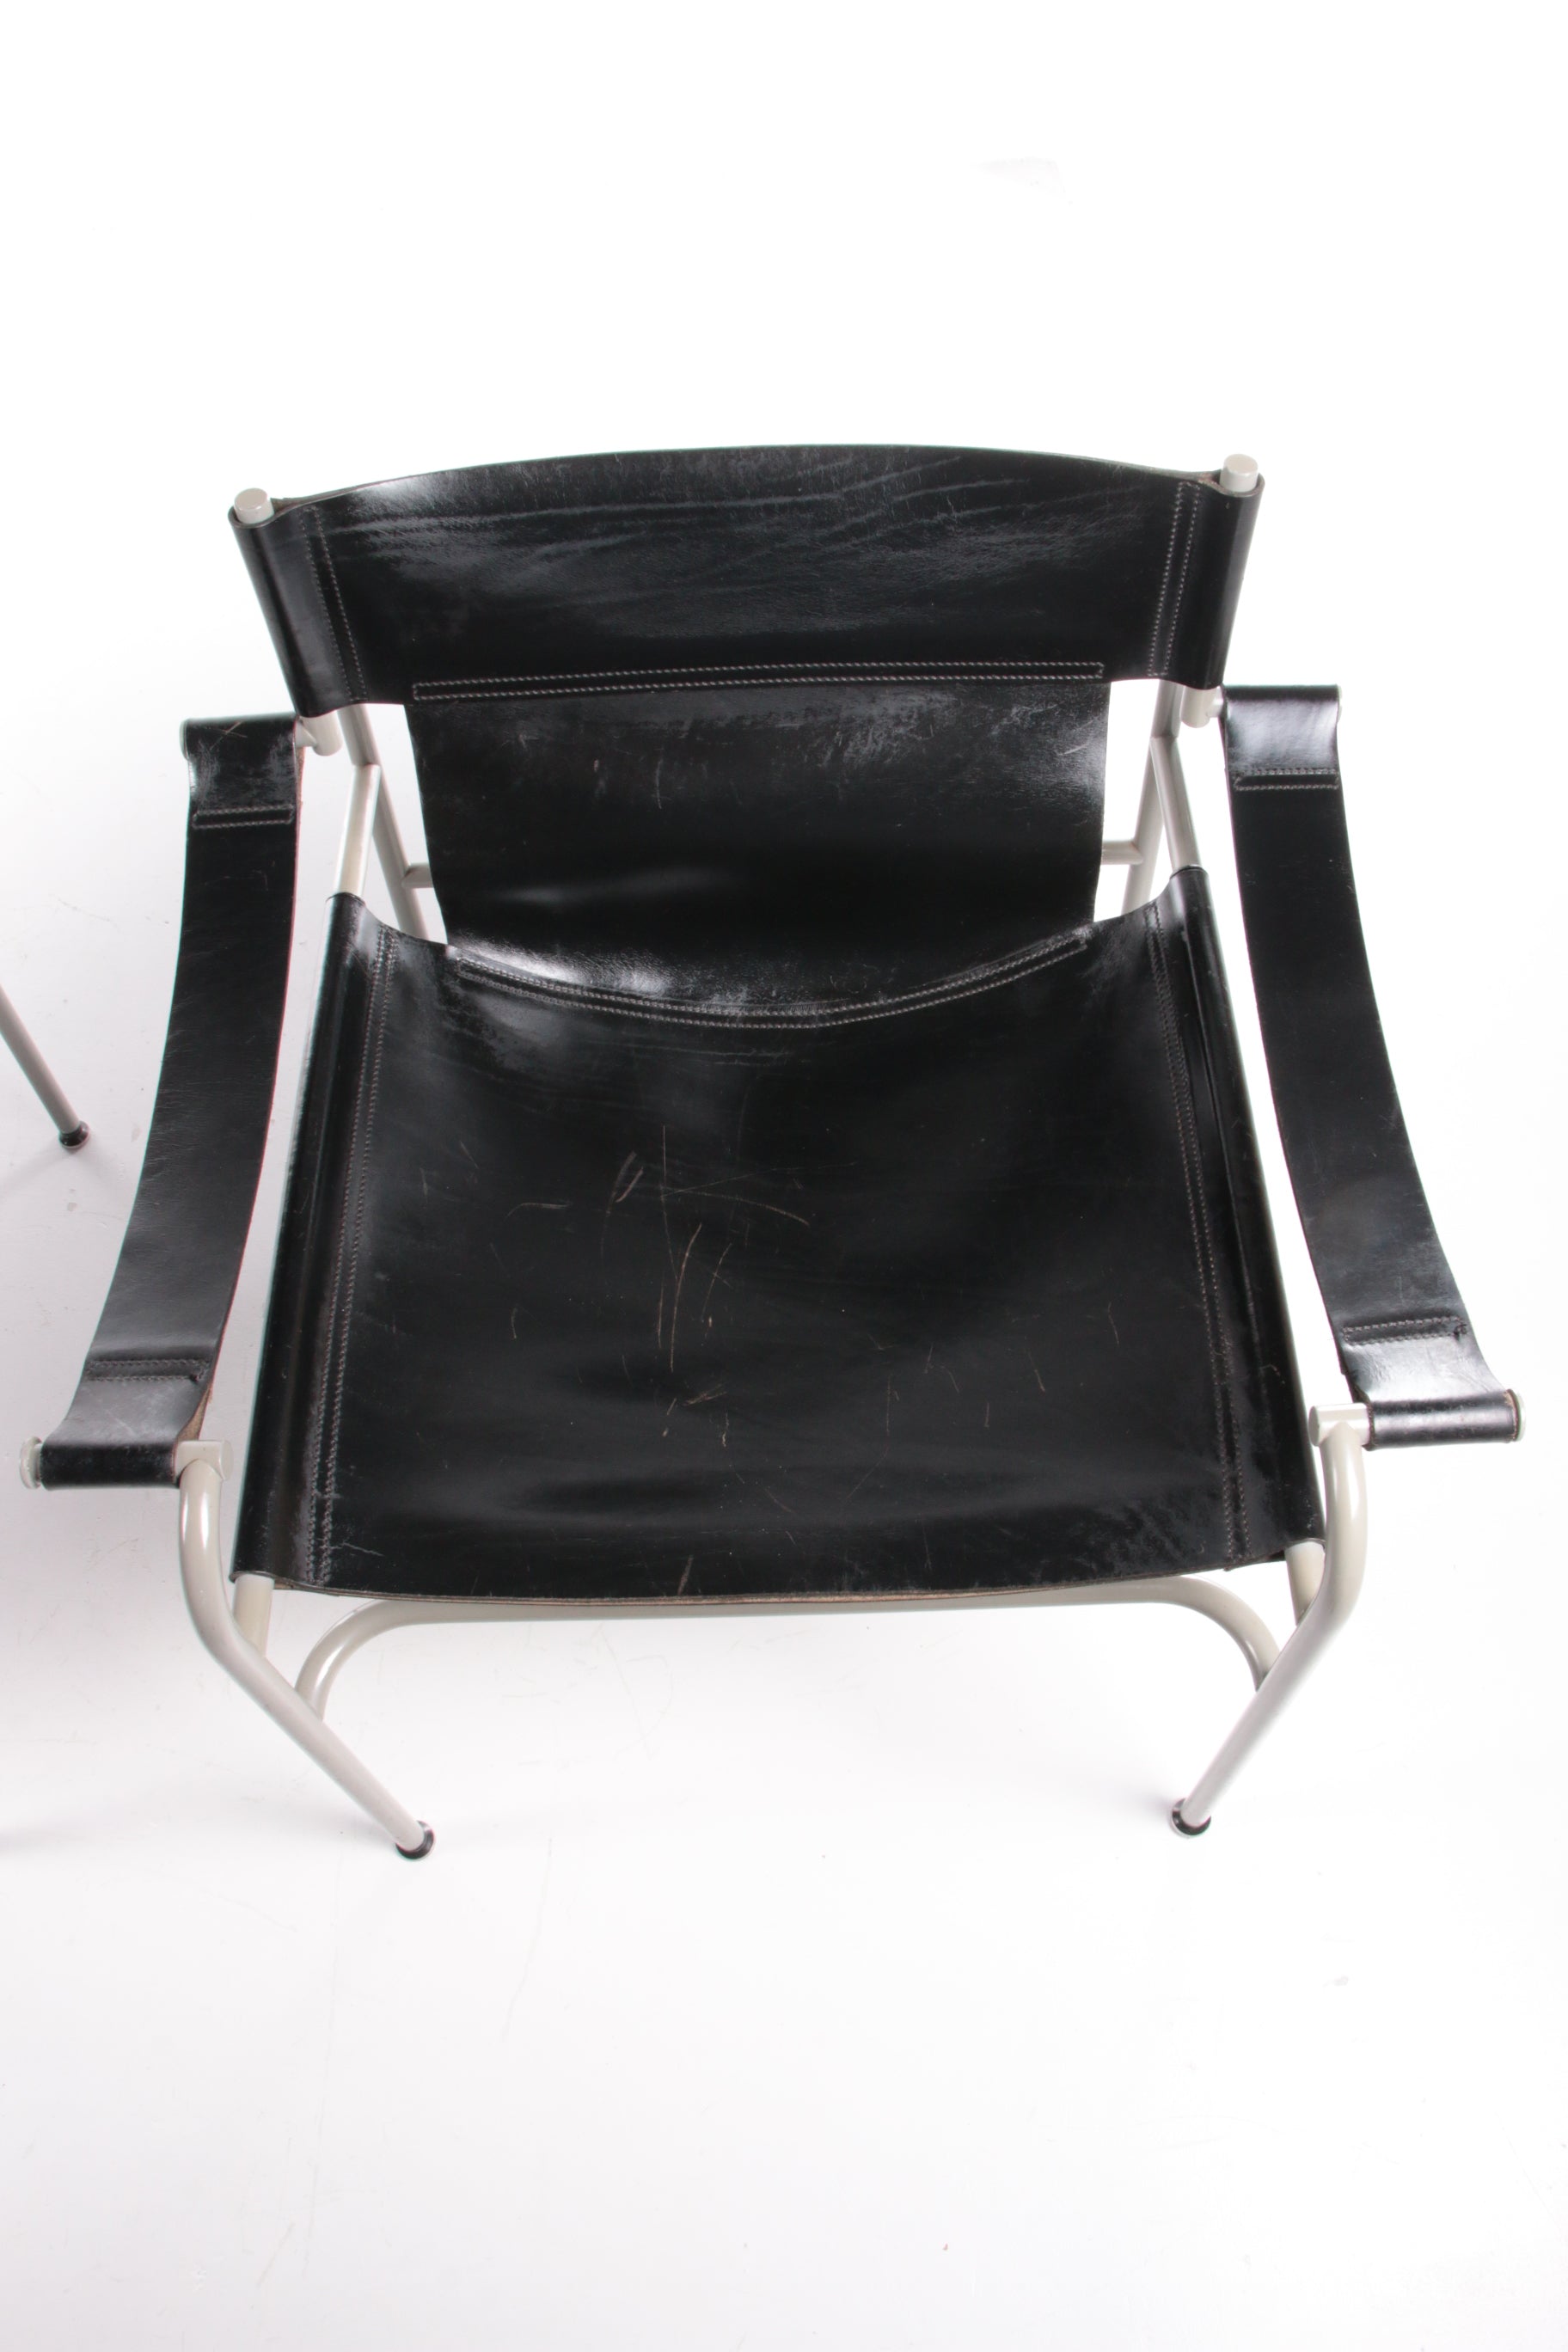 Walter Antonis set van 2 tuiglederen fauteuils gemaakt door 't Spectrum,1970